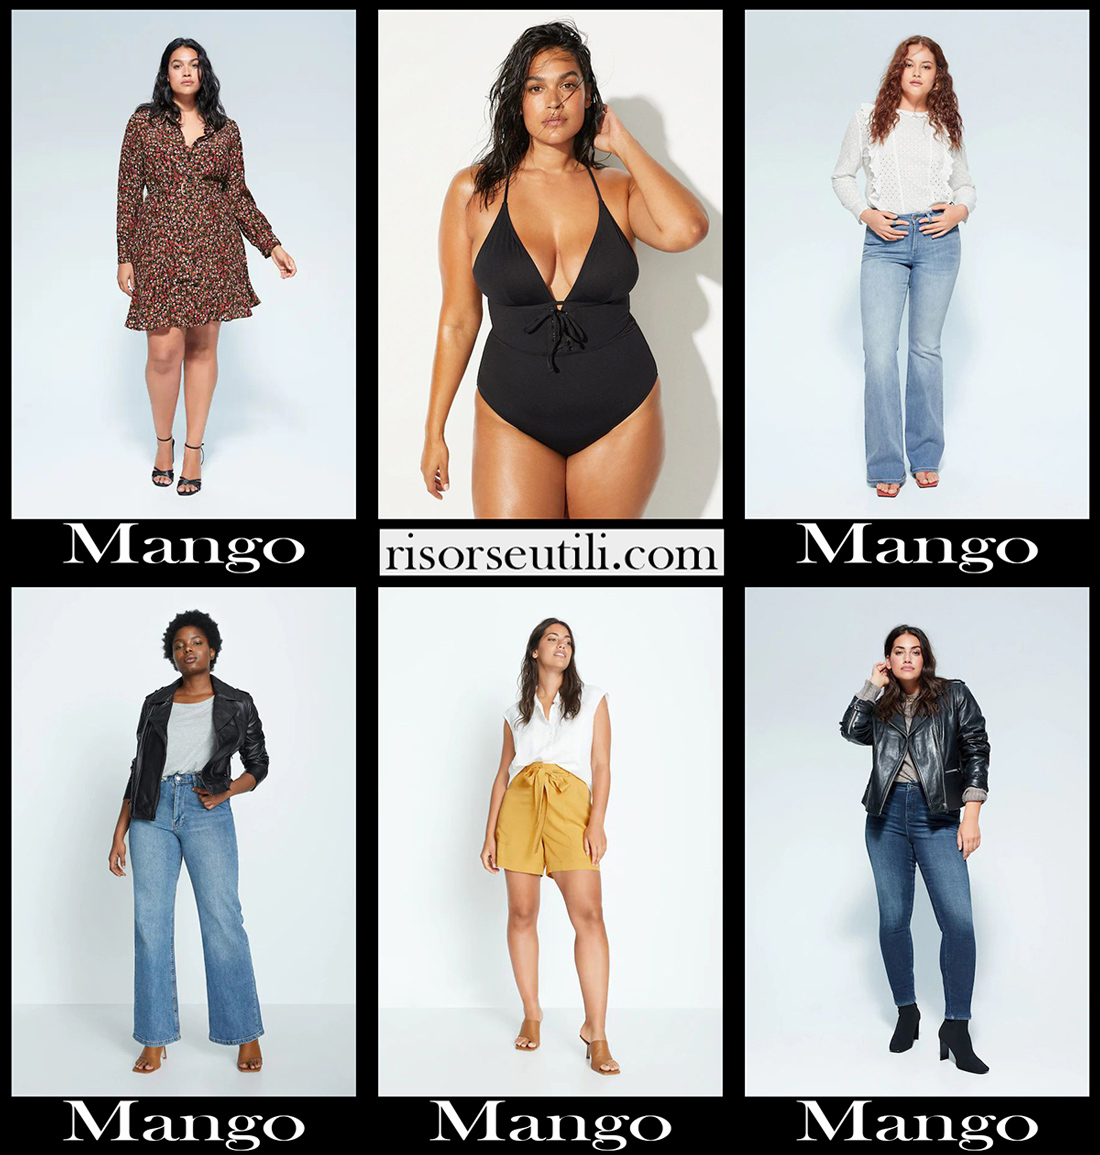 mango women clothing